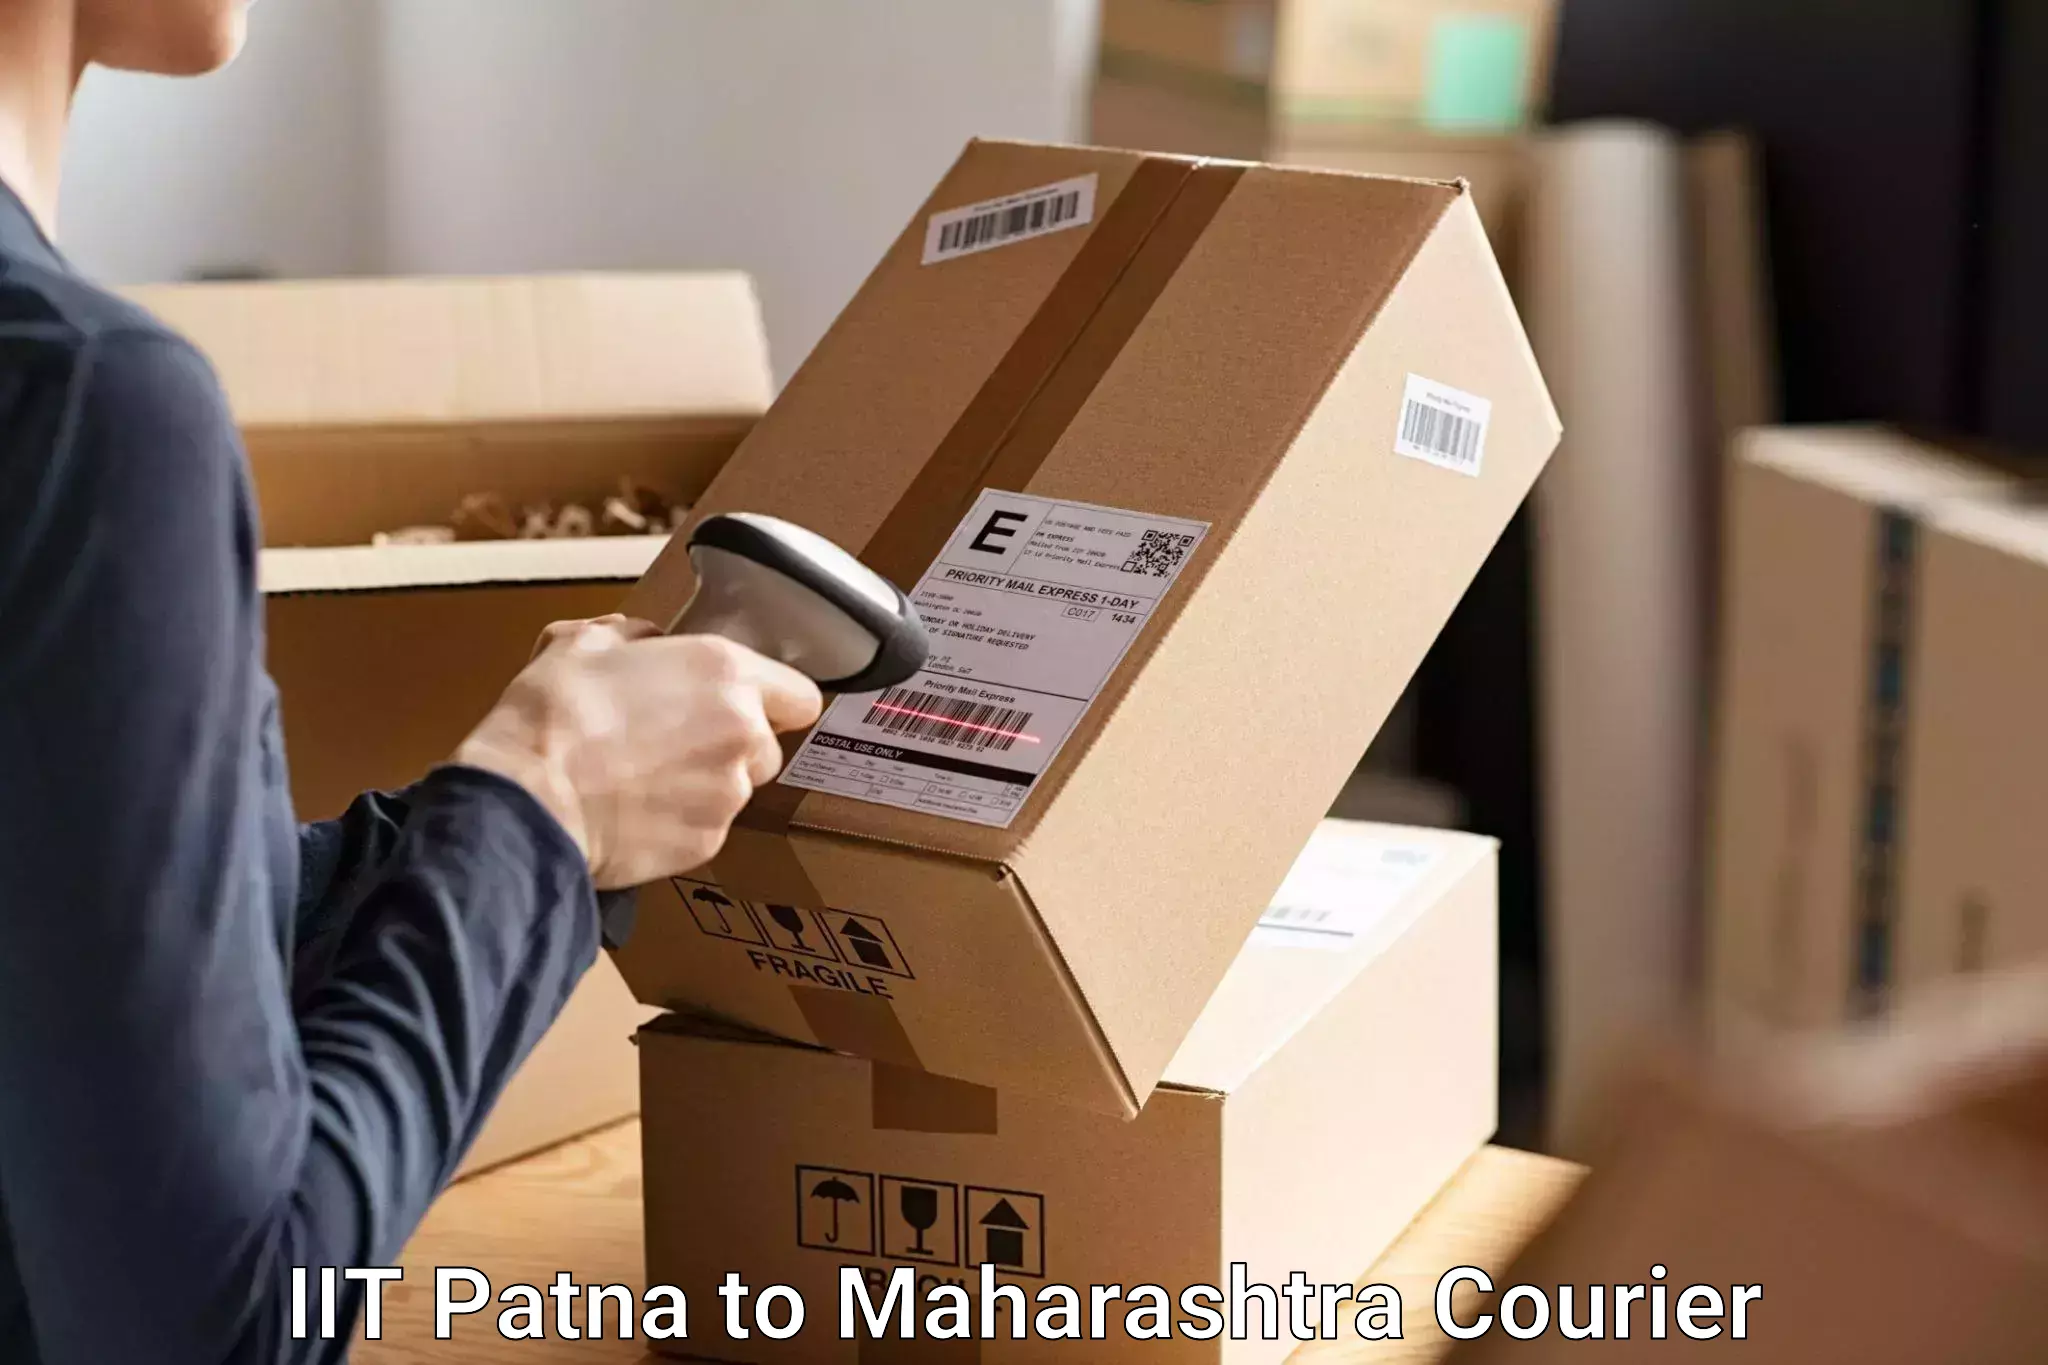 Digital baggage courier IIT Patna to Tirora